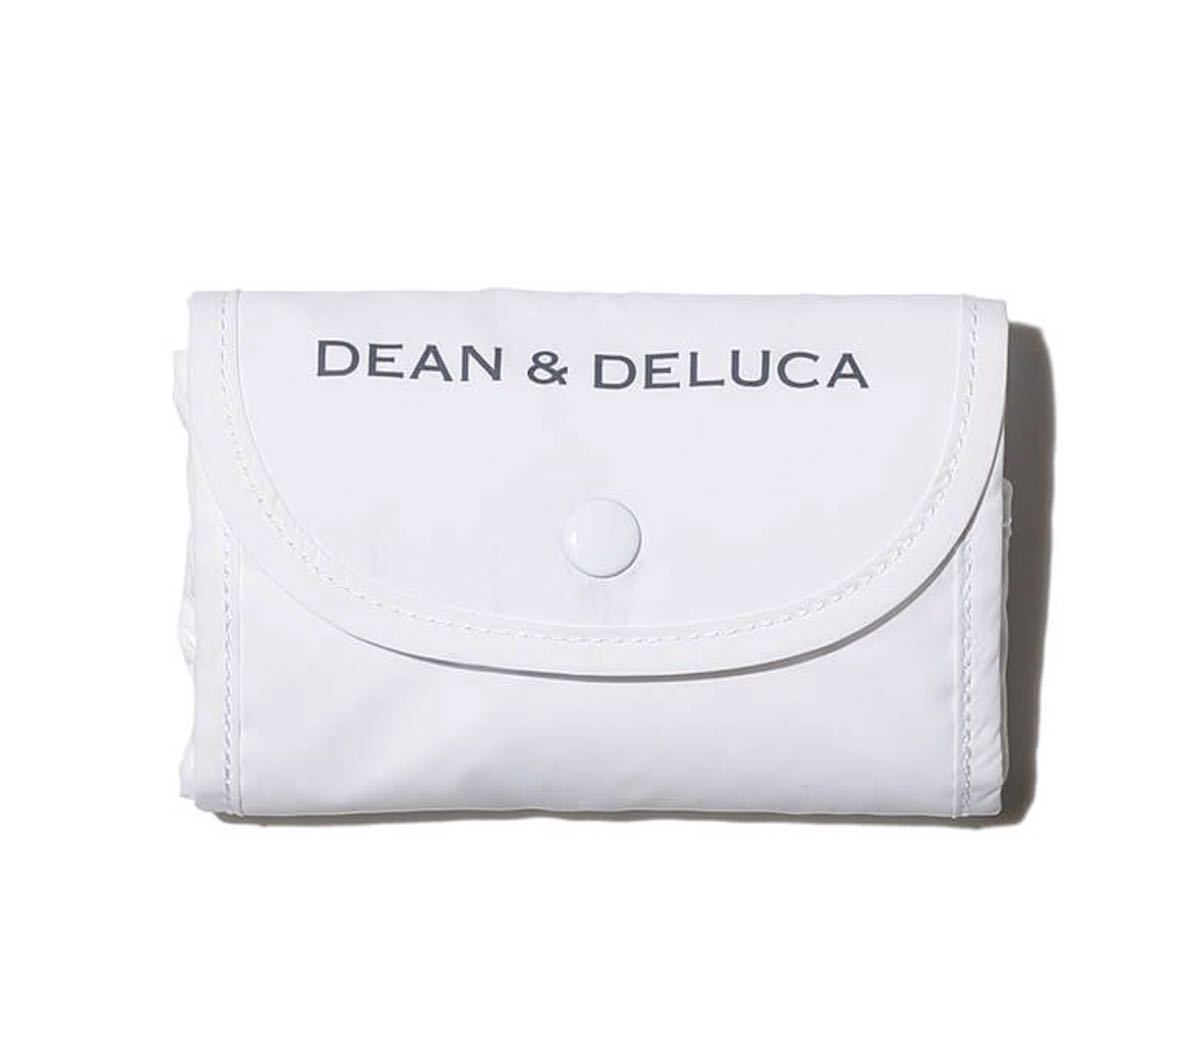 新品 DEAN & DELUCA 限定品 ディーン＆デルーカ ショッピングバッグ エコバッグ 白色(ホワイト) 正規品 バック カバン 折りたたみ トート